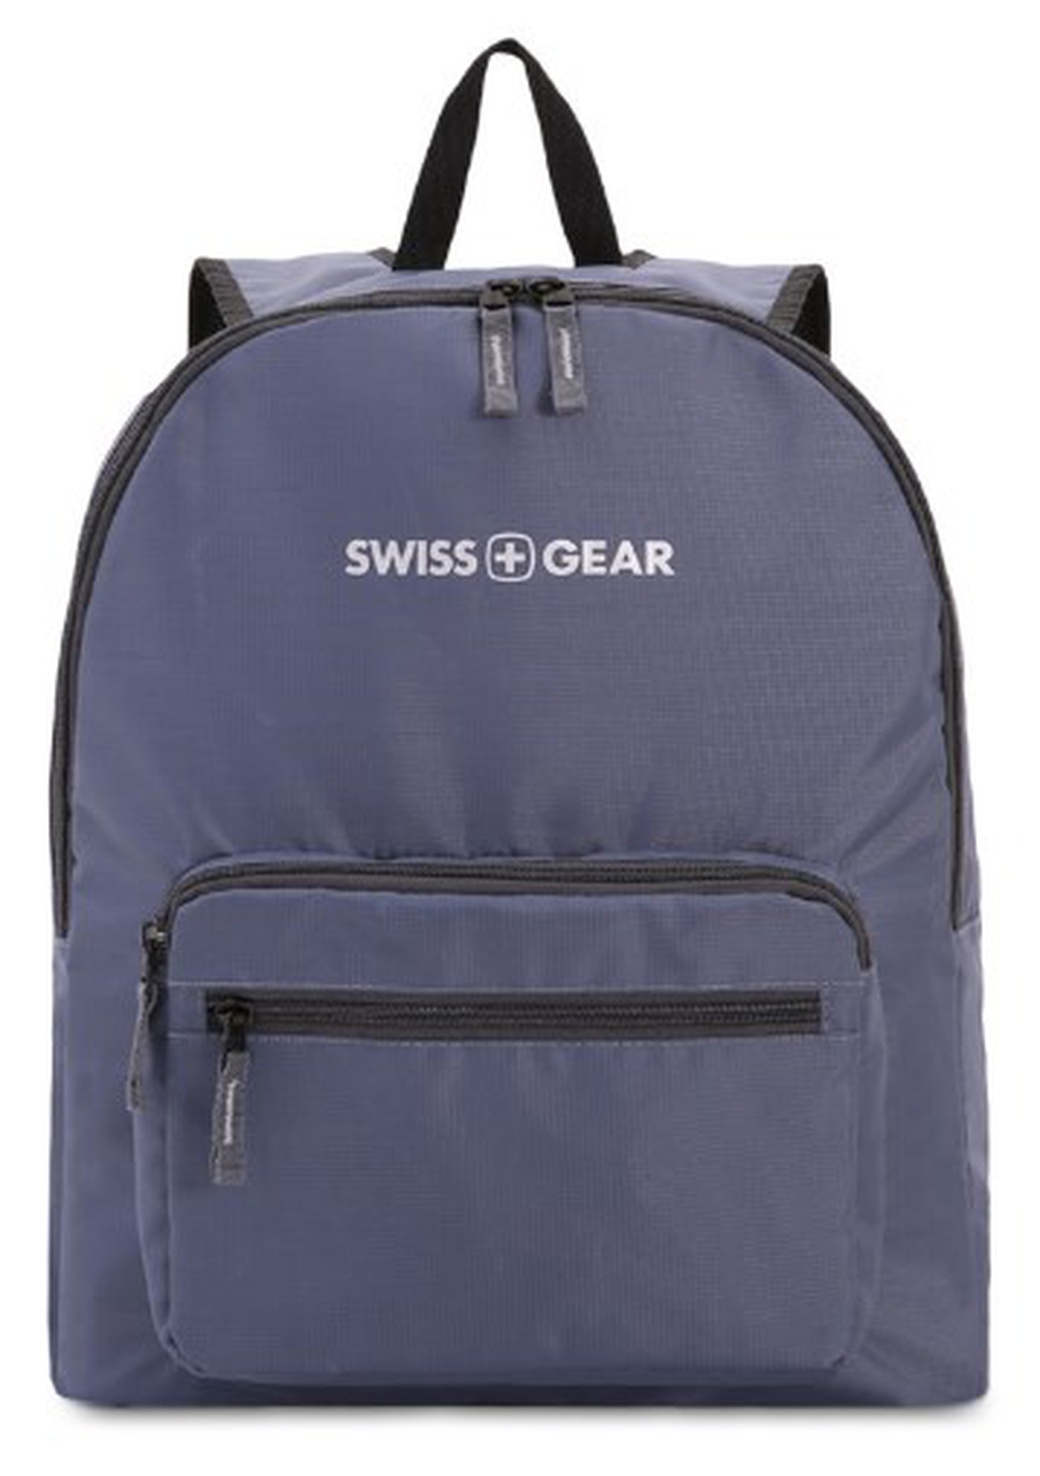 Рюкзак Swissgear складной, серый, 33,5х15,5x40 см, 21 л, шт фото